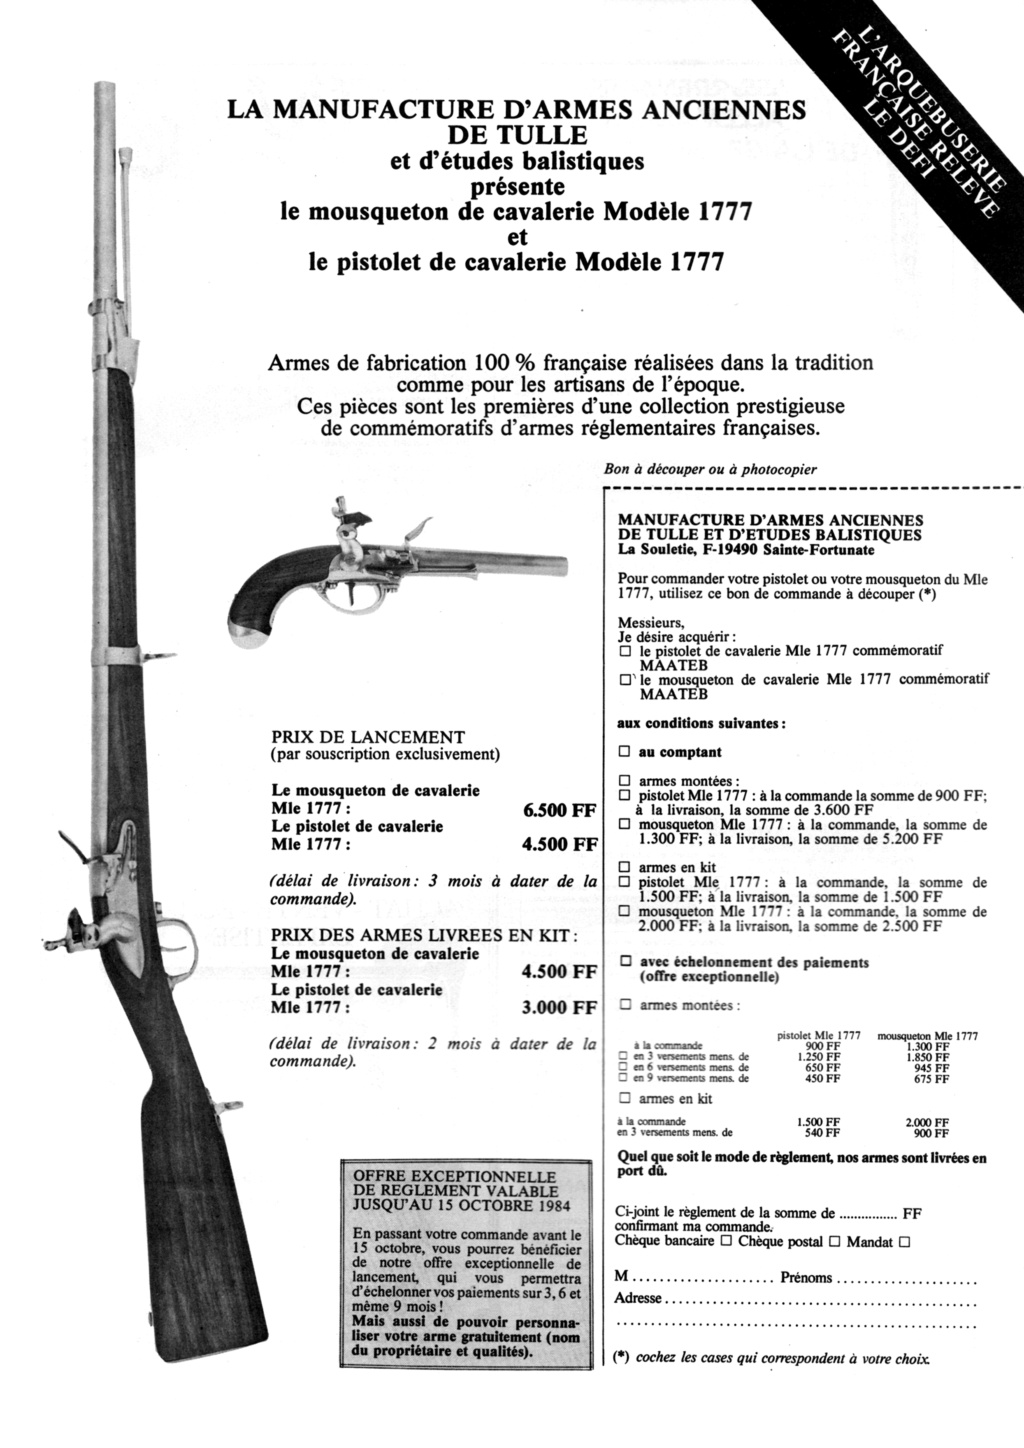 Pistolet 1777 MAATEB - Page 3 Maa-1310